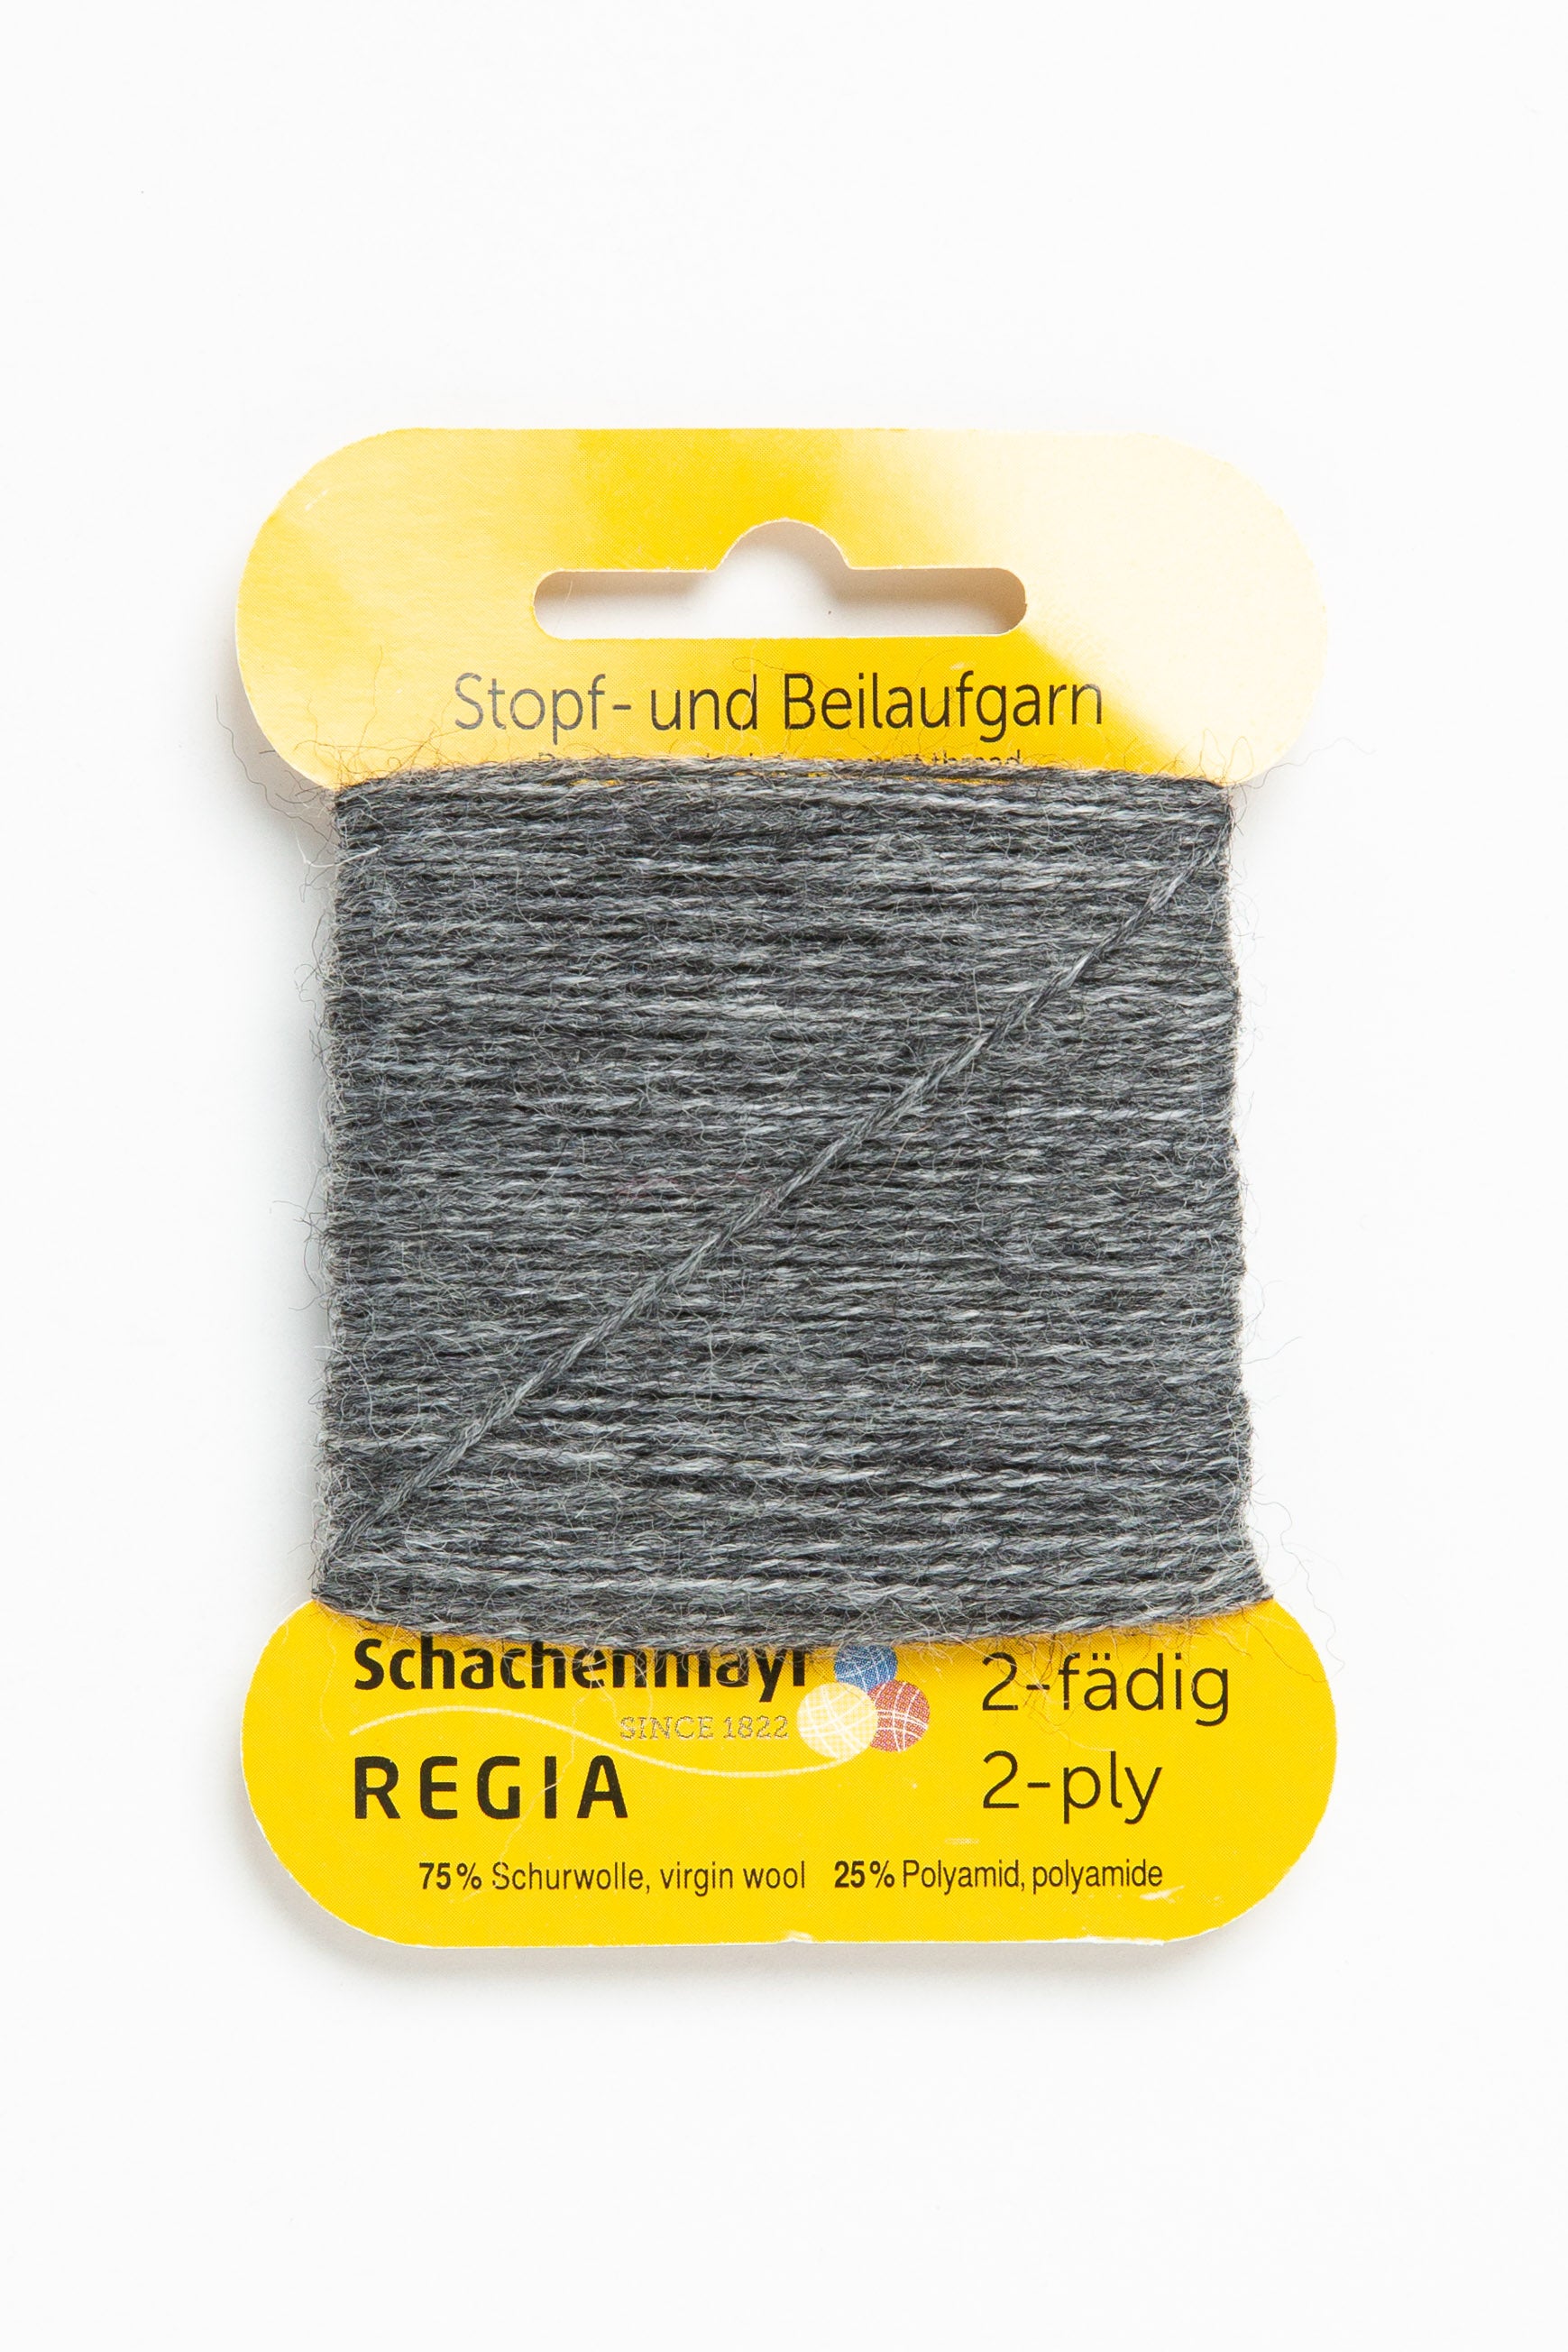 Mending Yarn Regia  Shop Yarn Online Today - Beehive Wool Shop